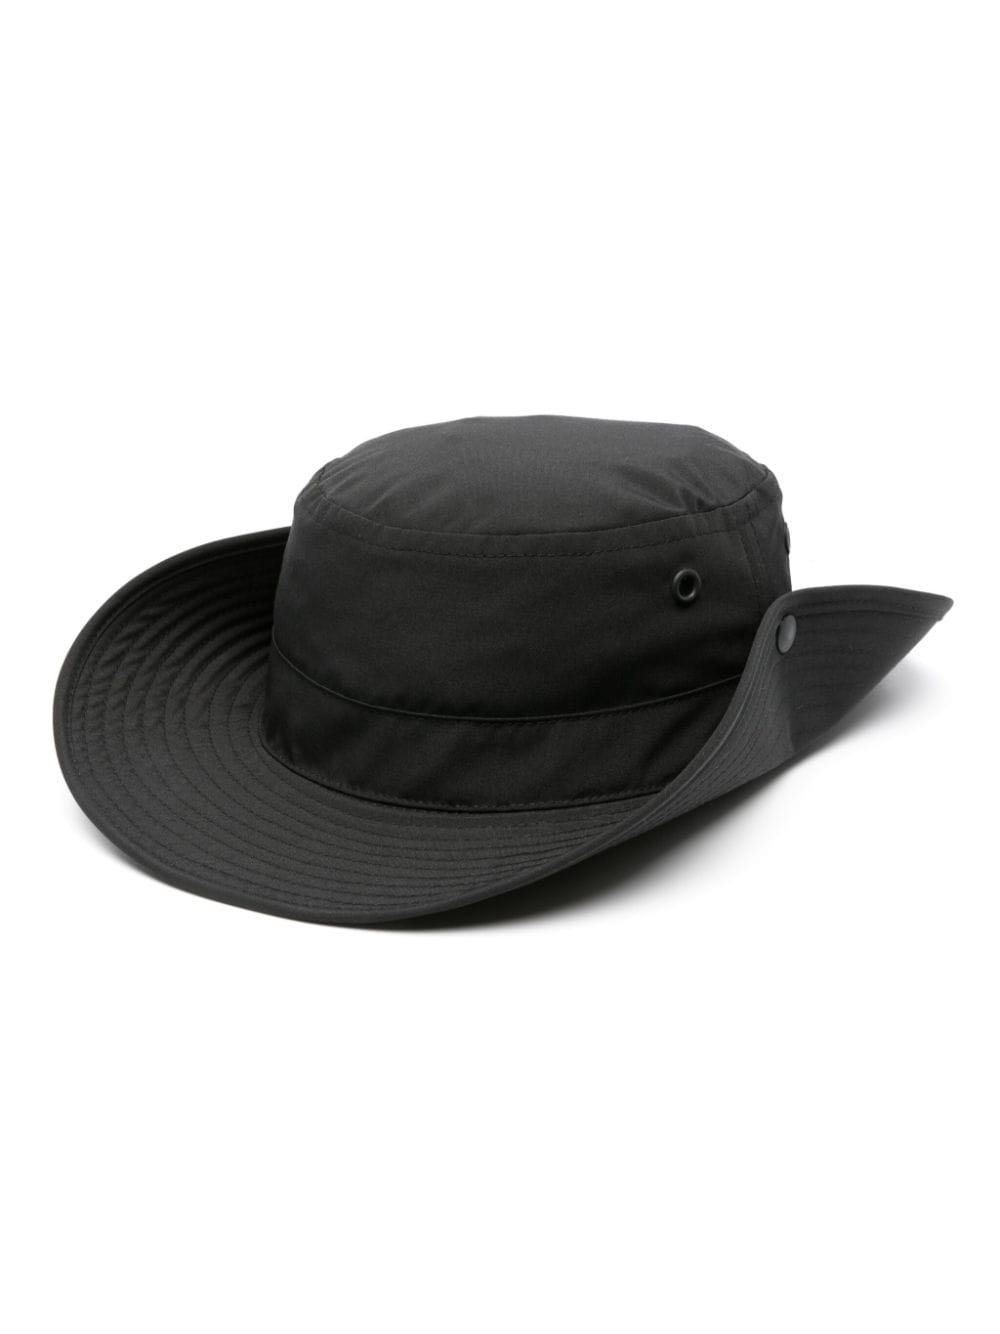 Canada Goose Venture Cotton Safari Hat In Black